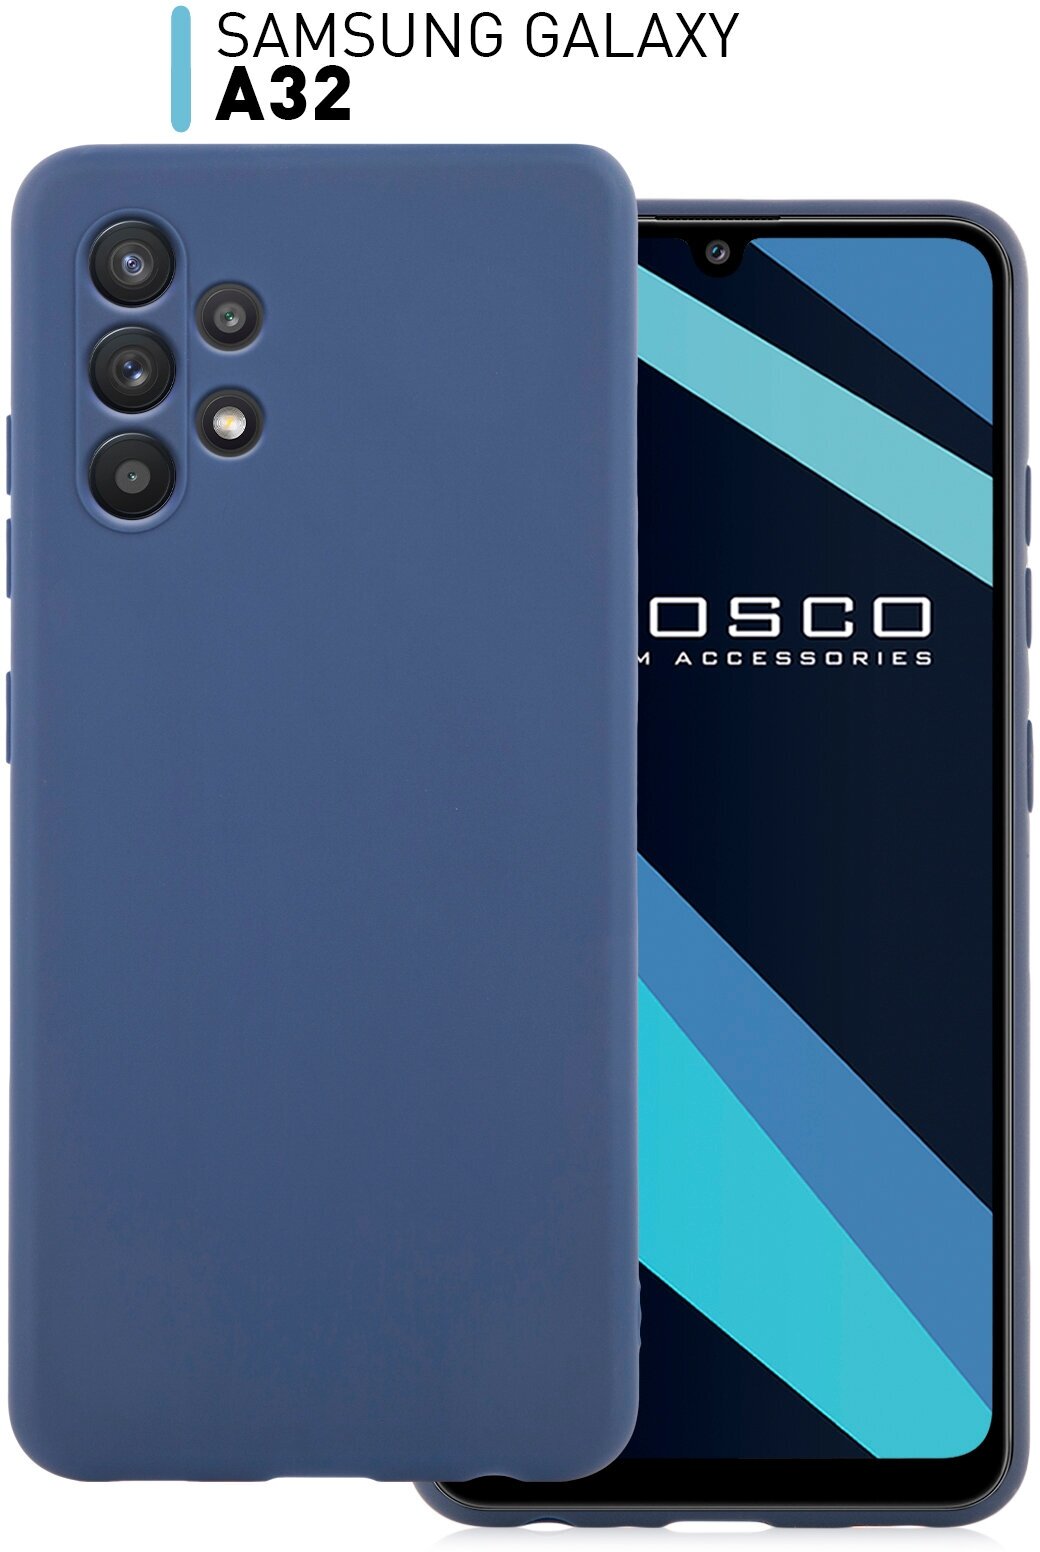 Чехол-накладка ROSCO на Samsung Galaxy A32 (Самсунг Галакси А32), тонкая полимерная из качественного силикона с матовым покрытием и бортиком (защитой) вокруг модуля камер, синий